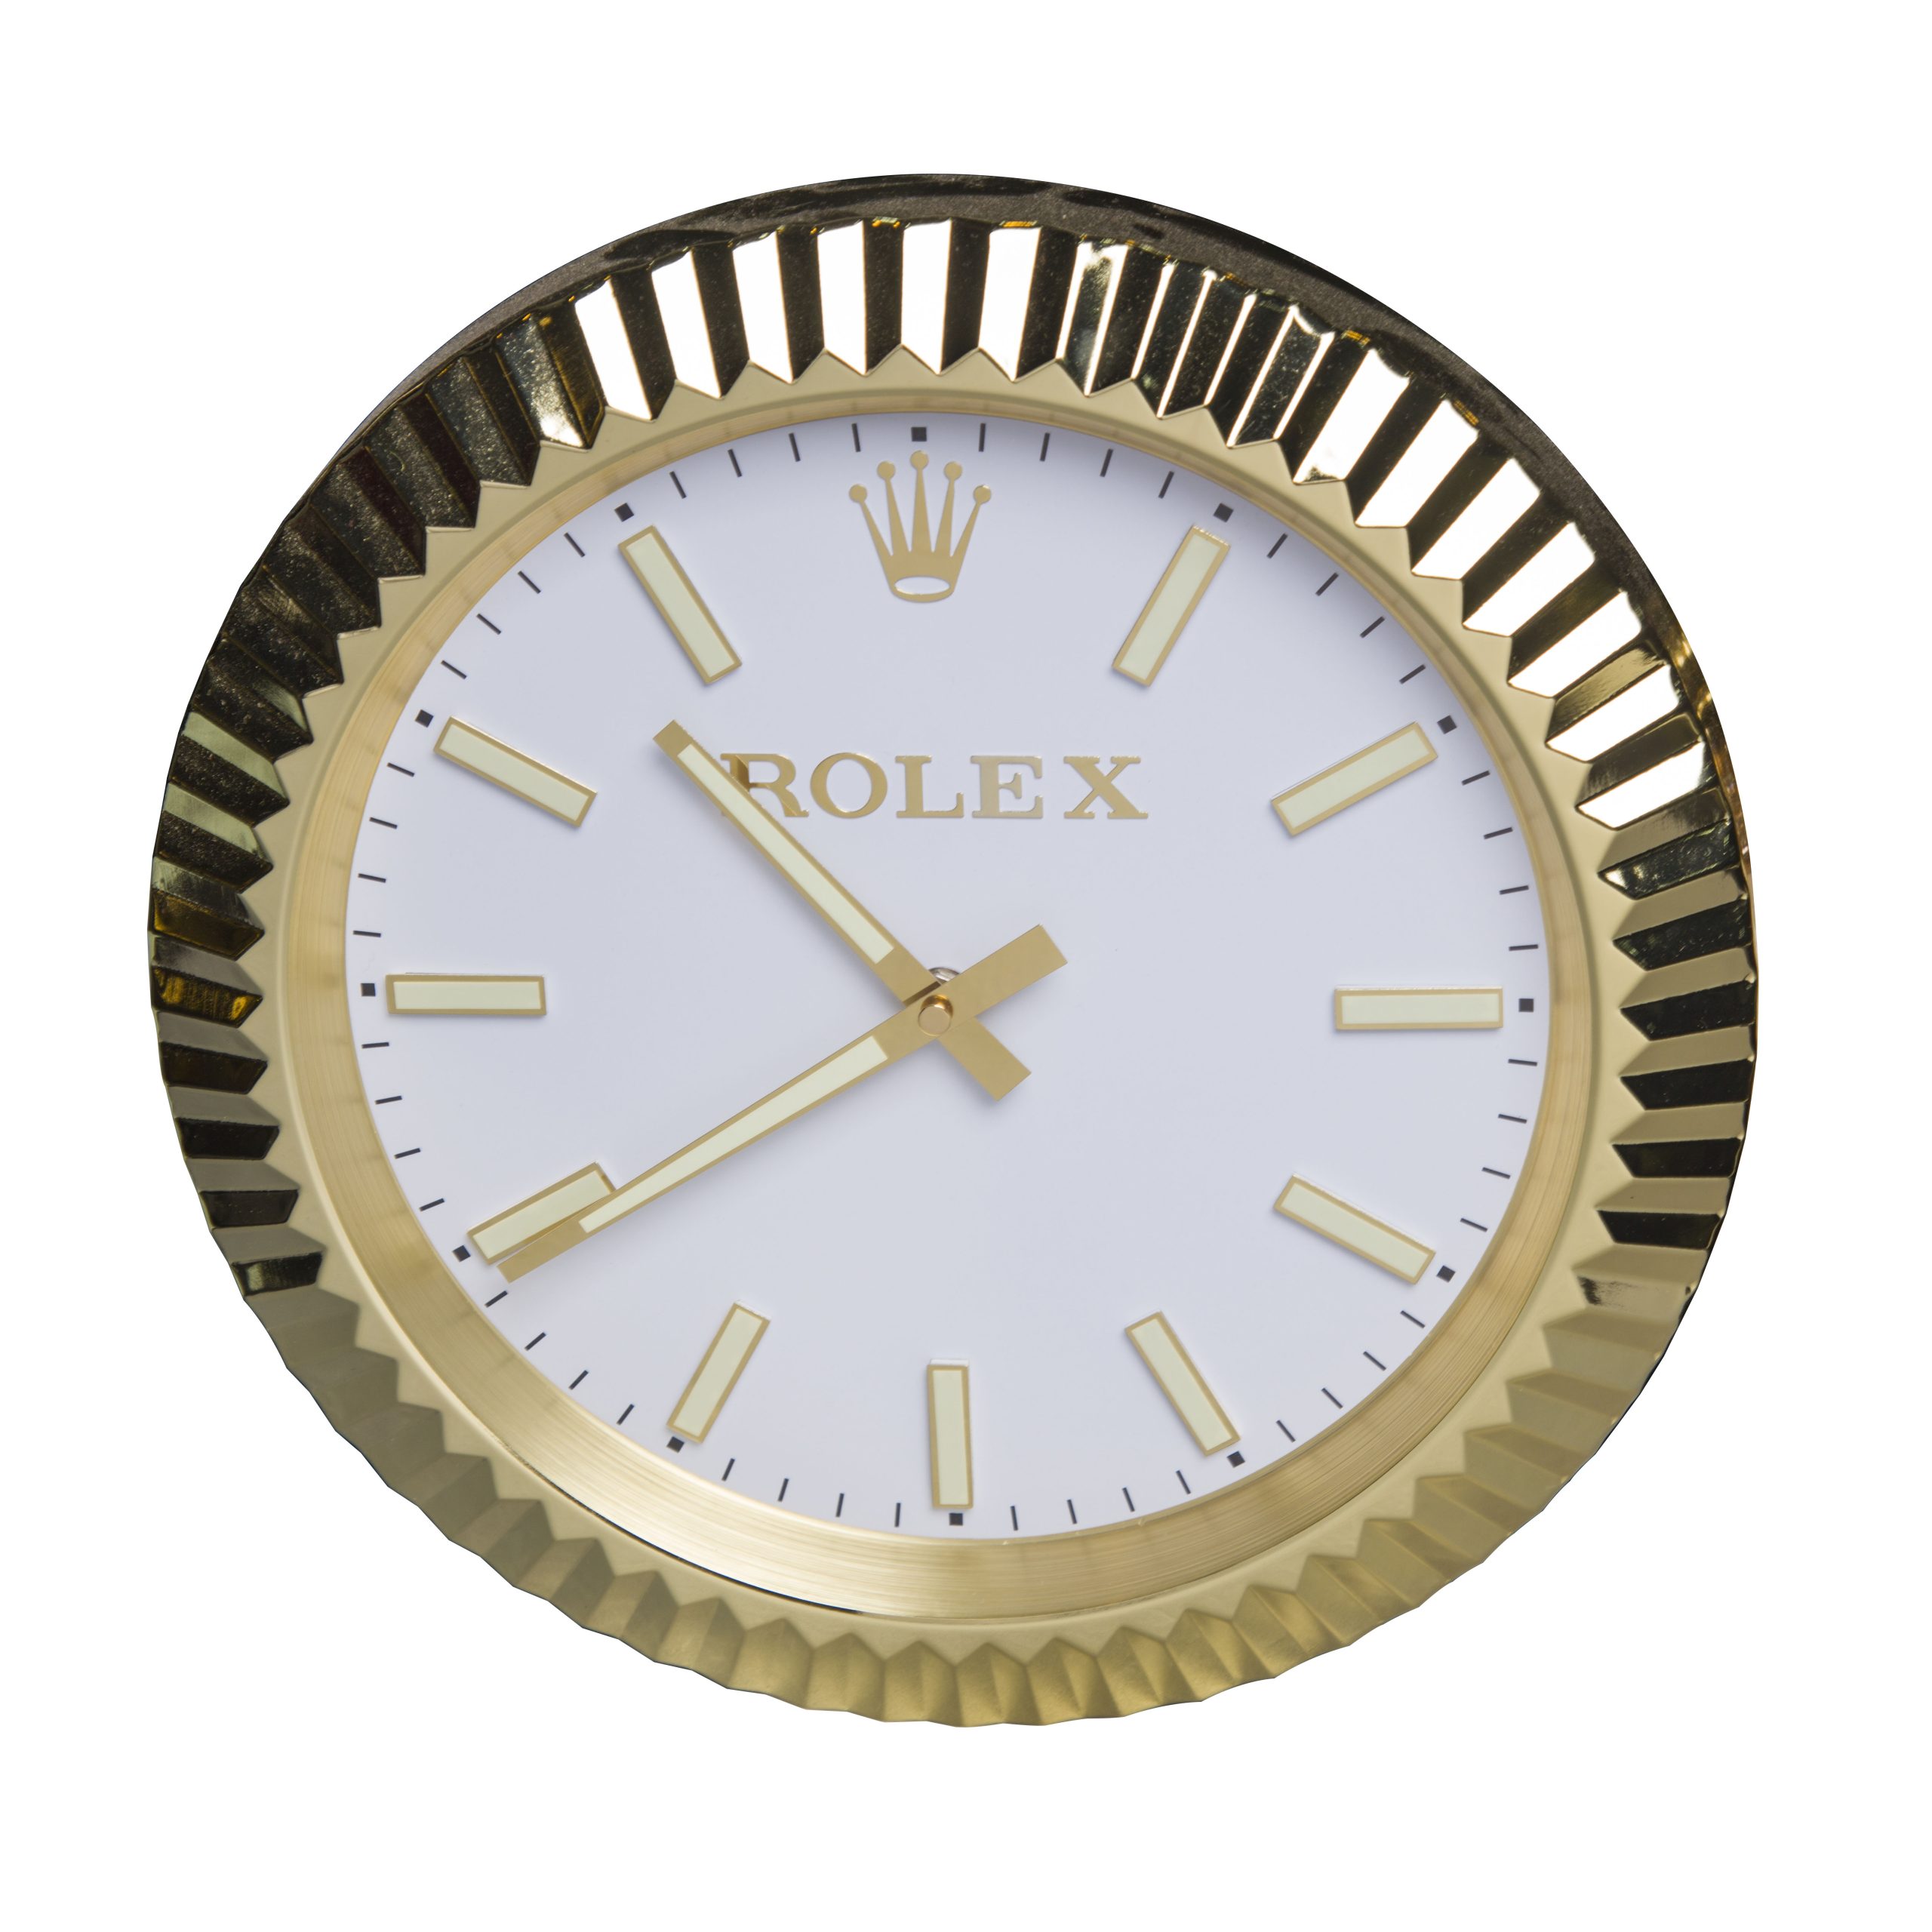 Rolex Wall Clocks